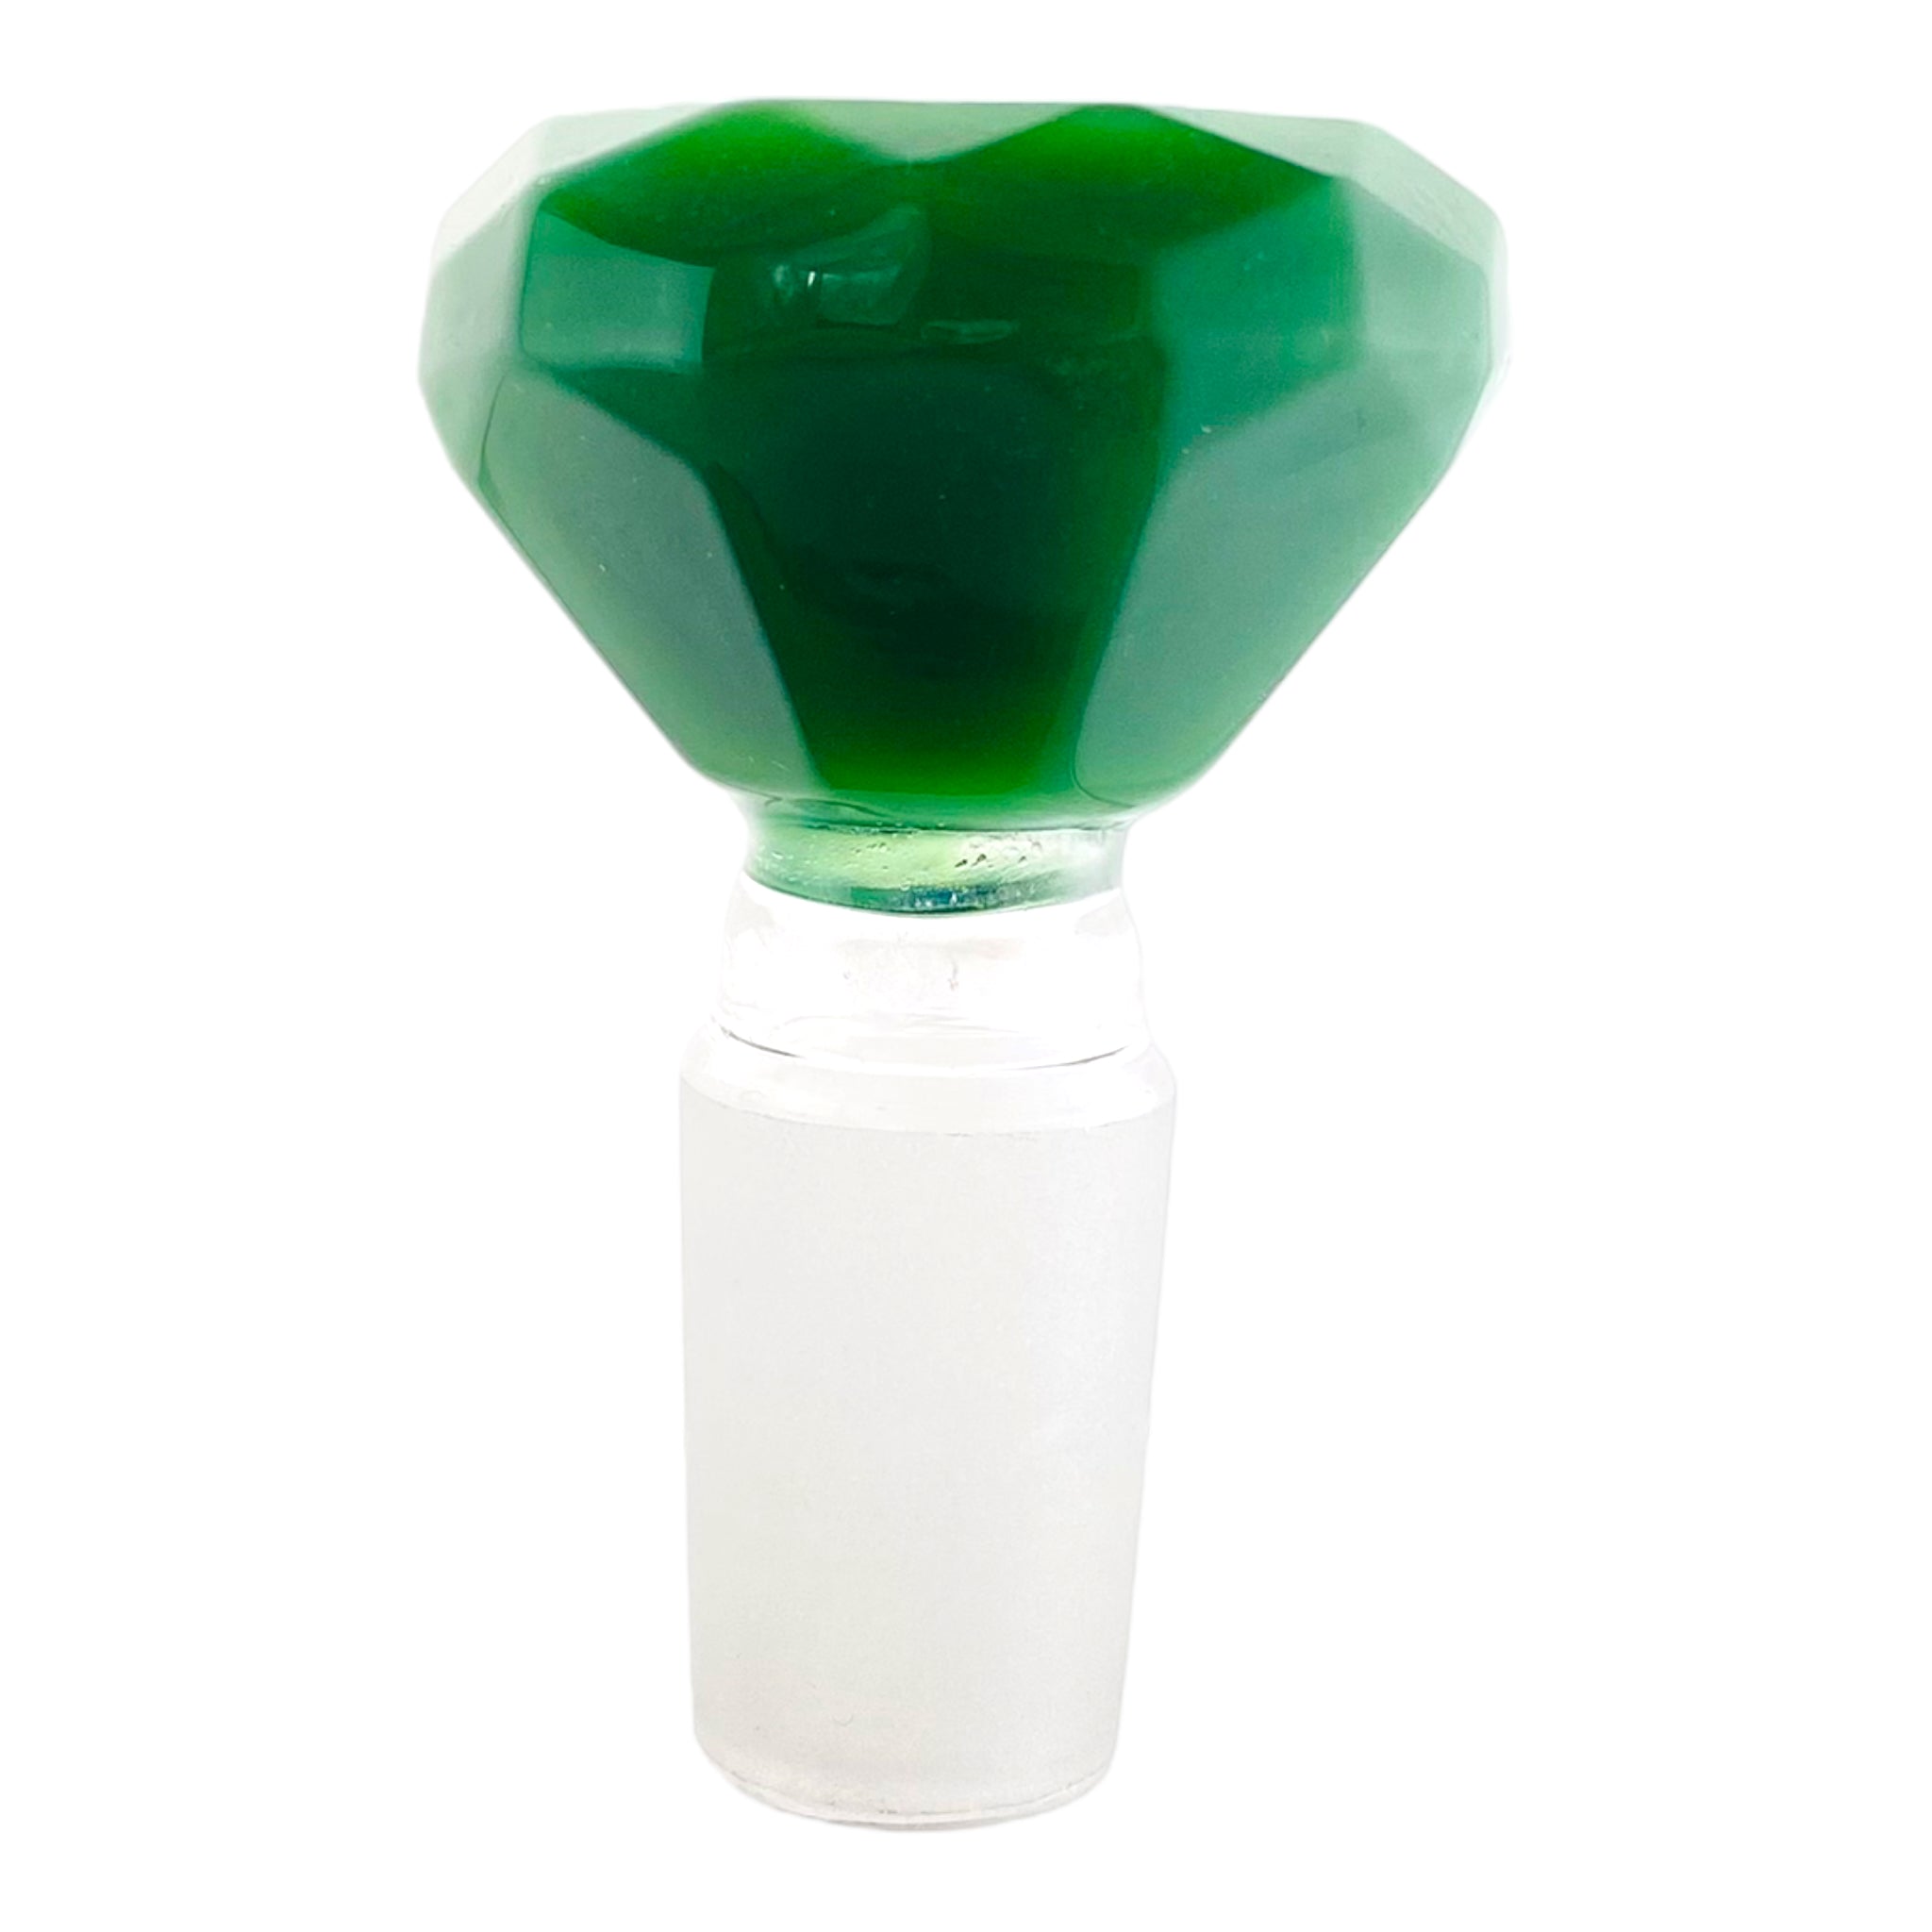 18mm Flower Bowl - Faceted Diamond Glass Bong Bowl Piece - Jade Green